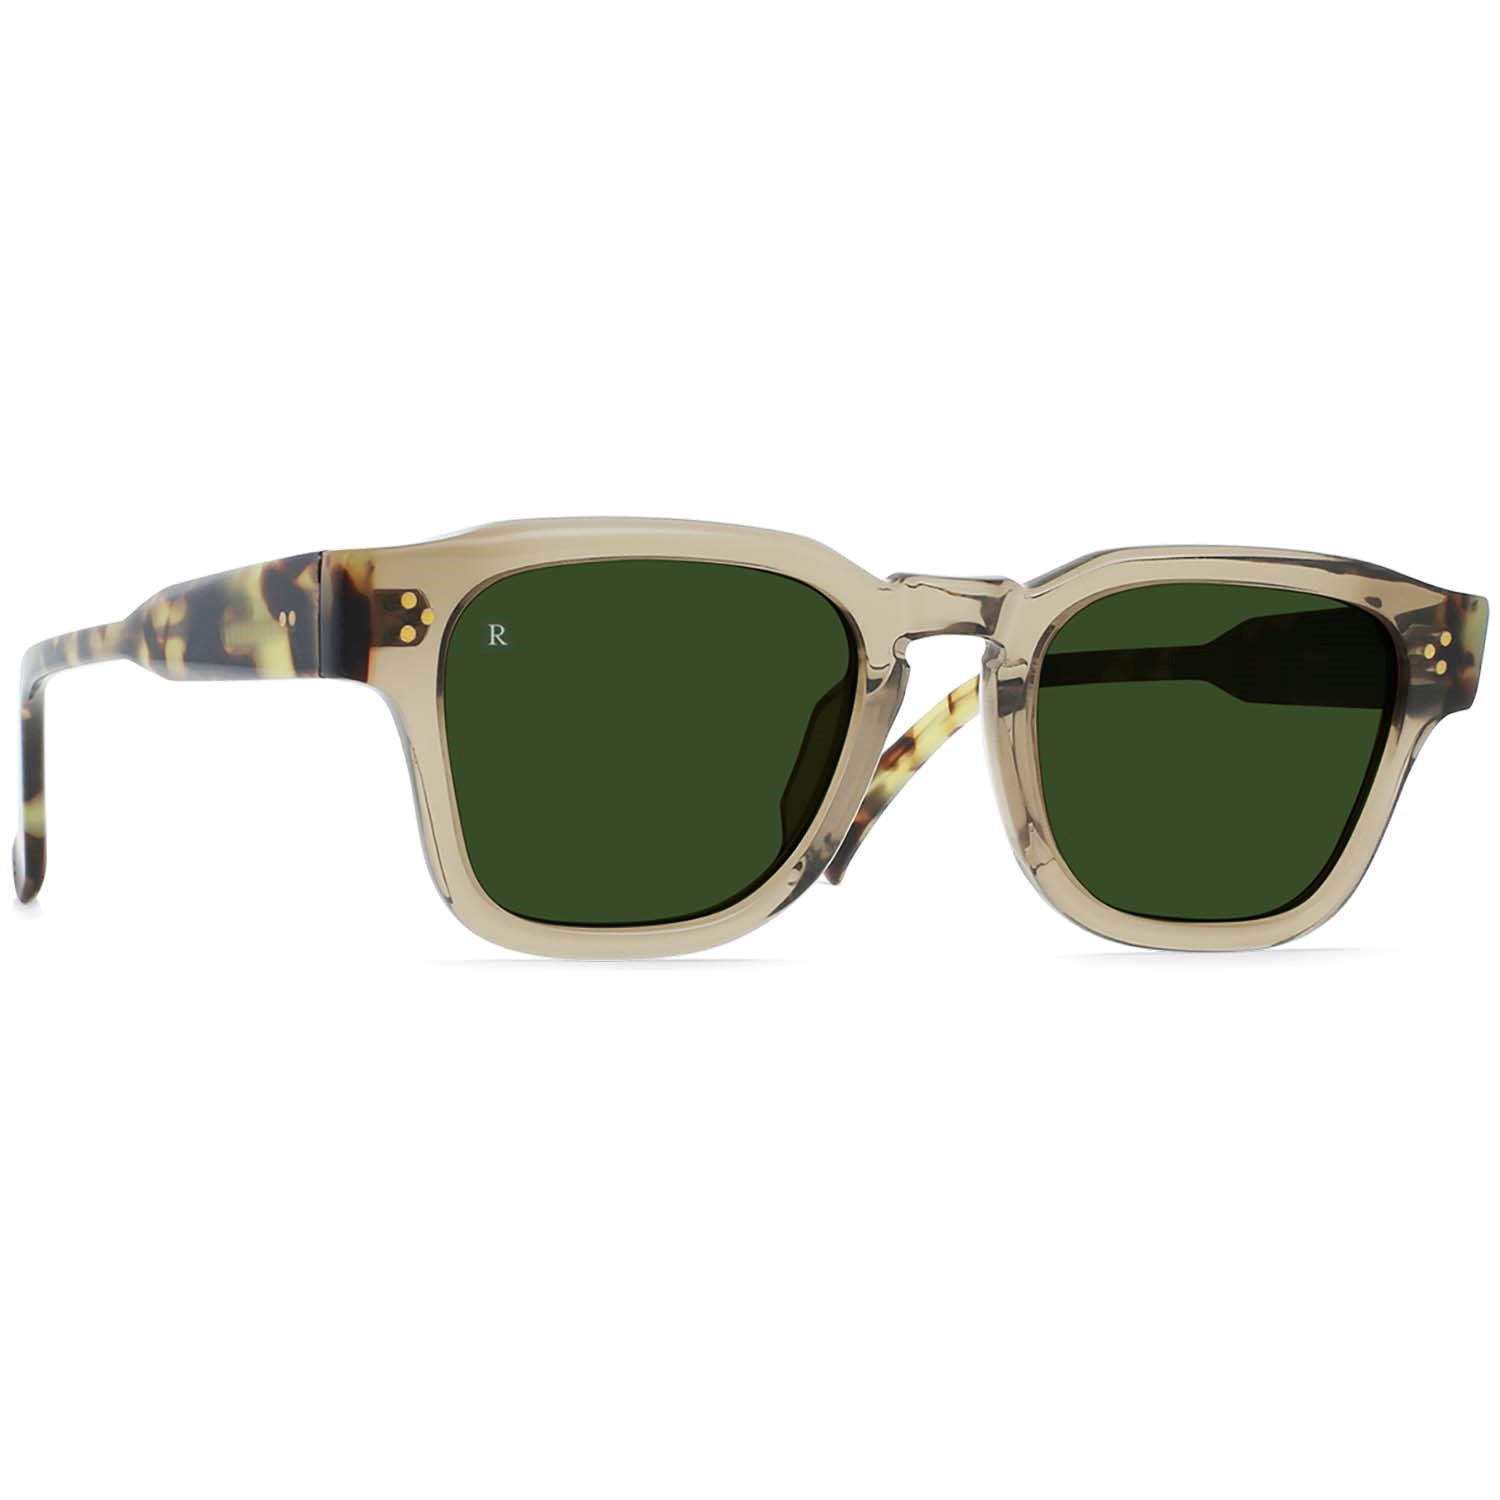 Солнцезащитные очки RAEN Rece, бежевый/зеленый набор carl zeiss для ухода за оптикой lens cleaning kit